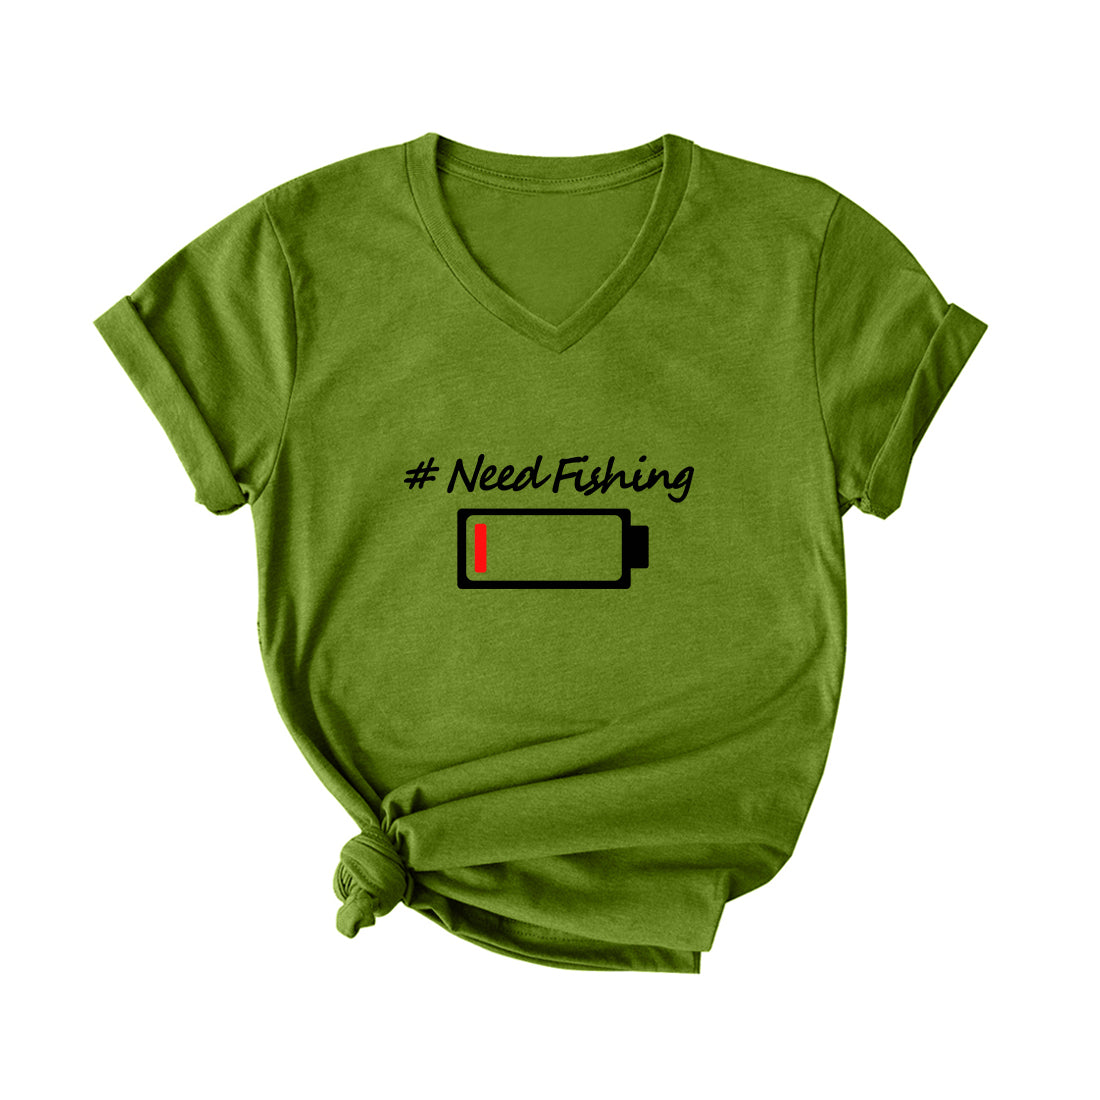 NEEDFISHING V Neck T-Shirt for Women